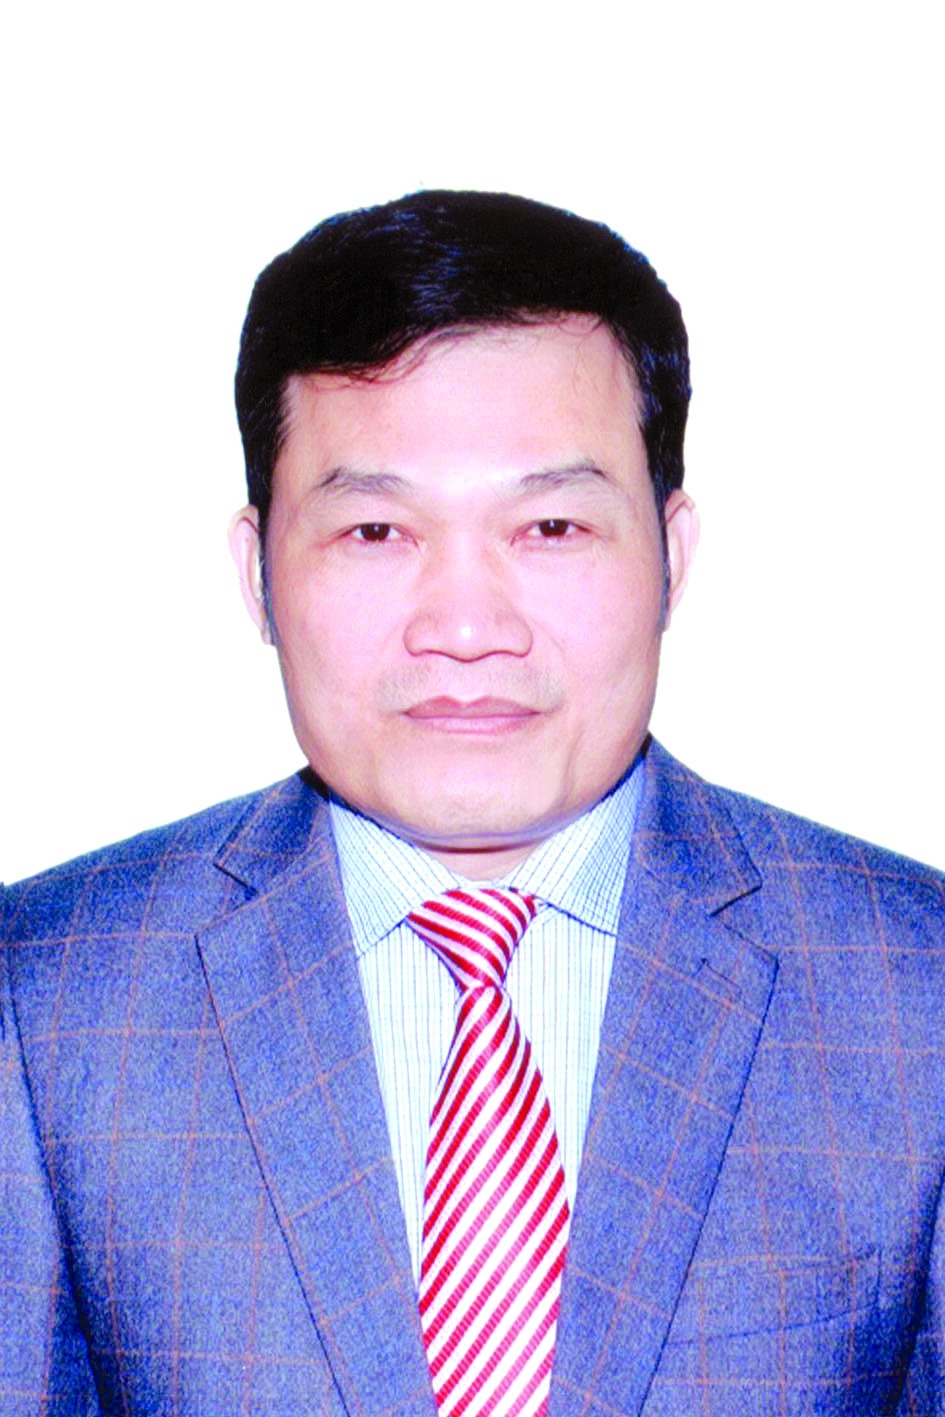 Chương trình hành động của Bí thư Huyện ủy Thường Tín Nguyễn Tiến Minh, ứng cử viên đại biểu HĐND TP Hà Nội nhiệm kỳ 2021 - 2026 - Ảnh 1